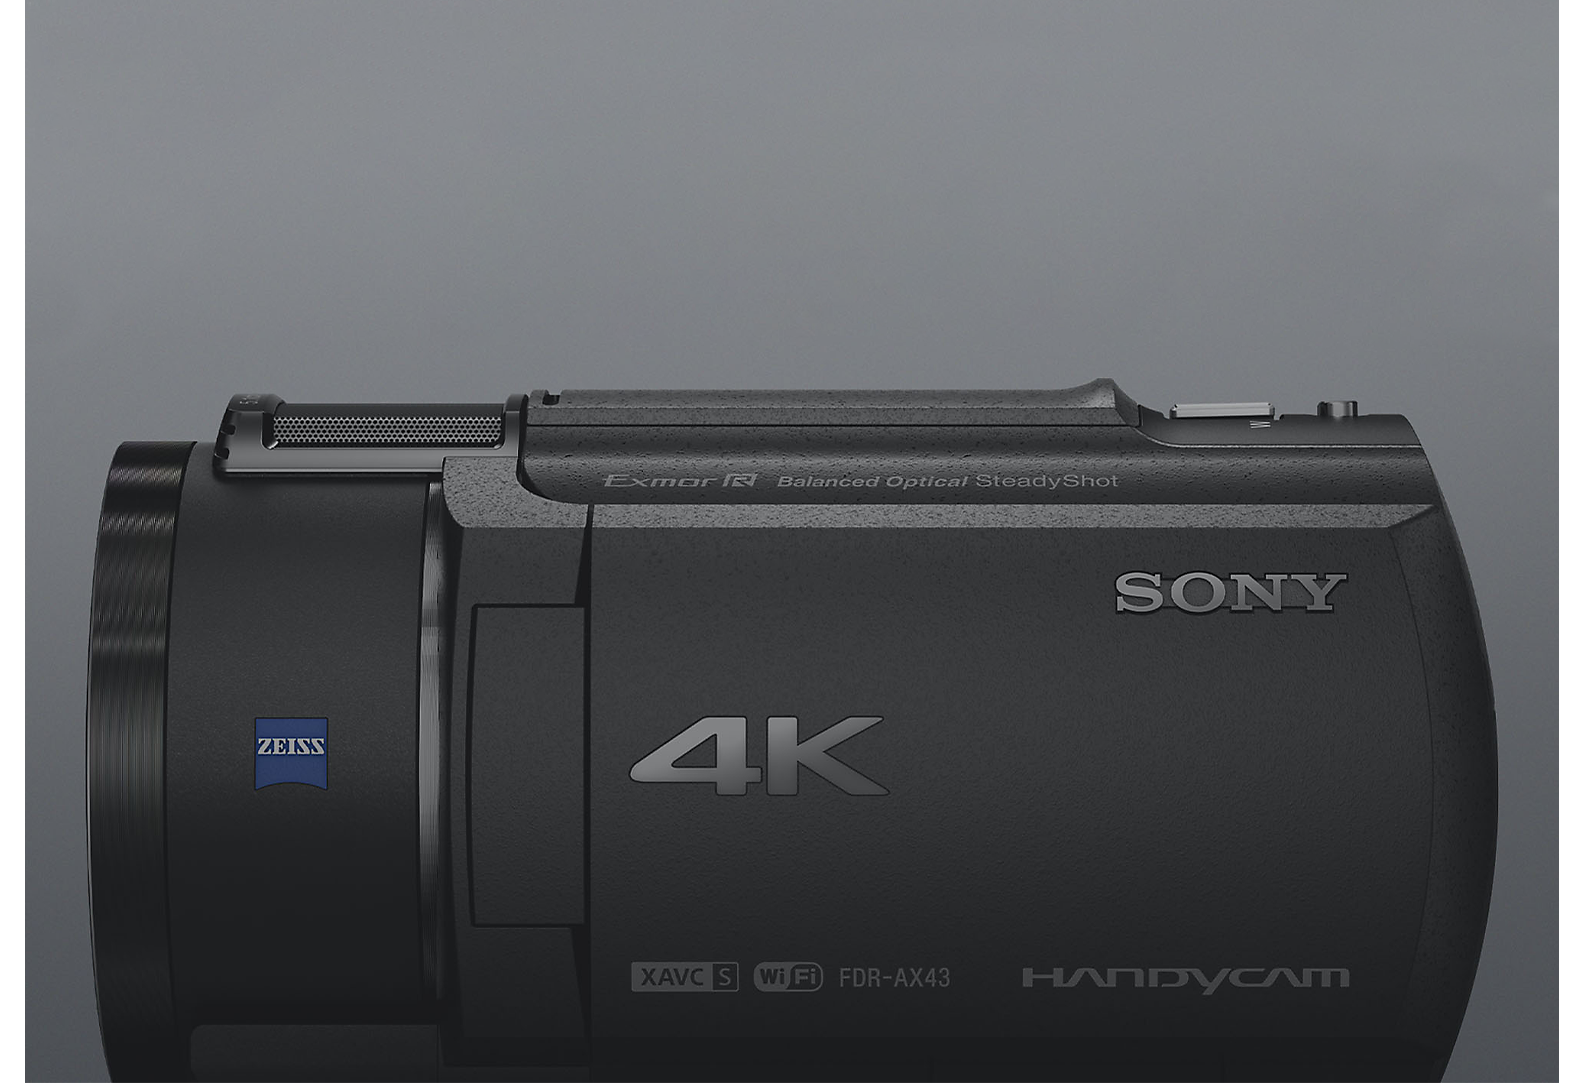 소니 4K Handycam 캠코더의 측면 뷰